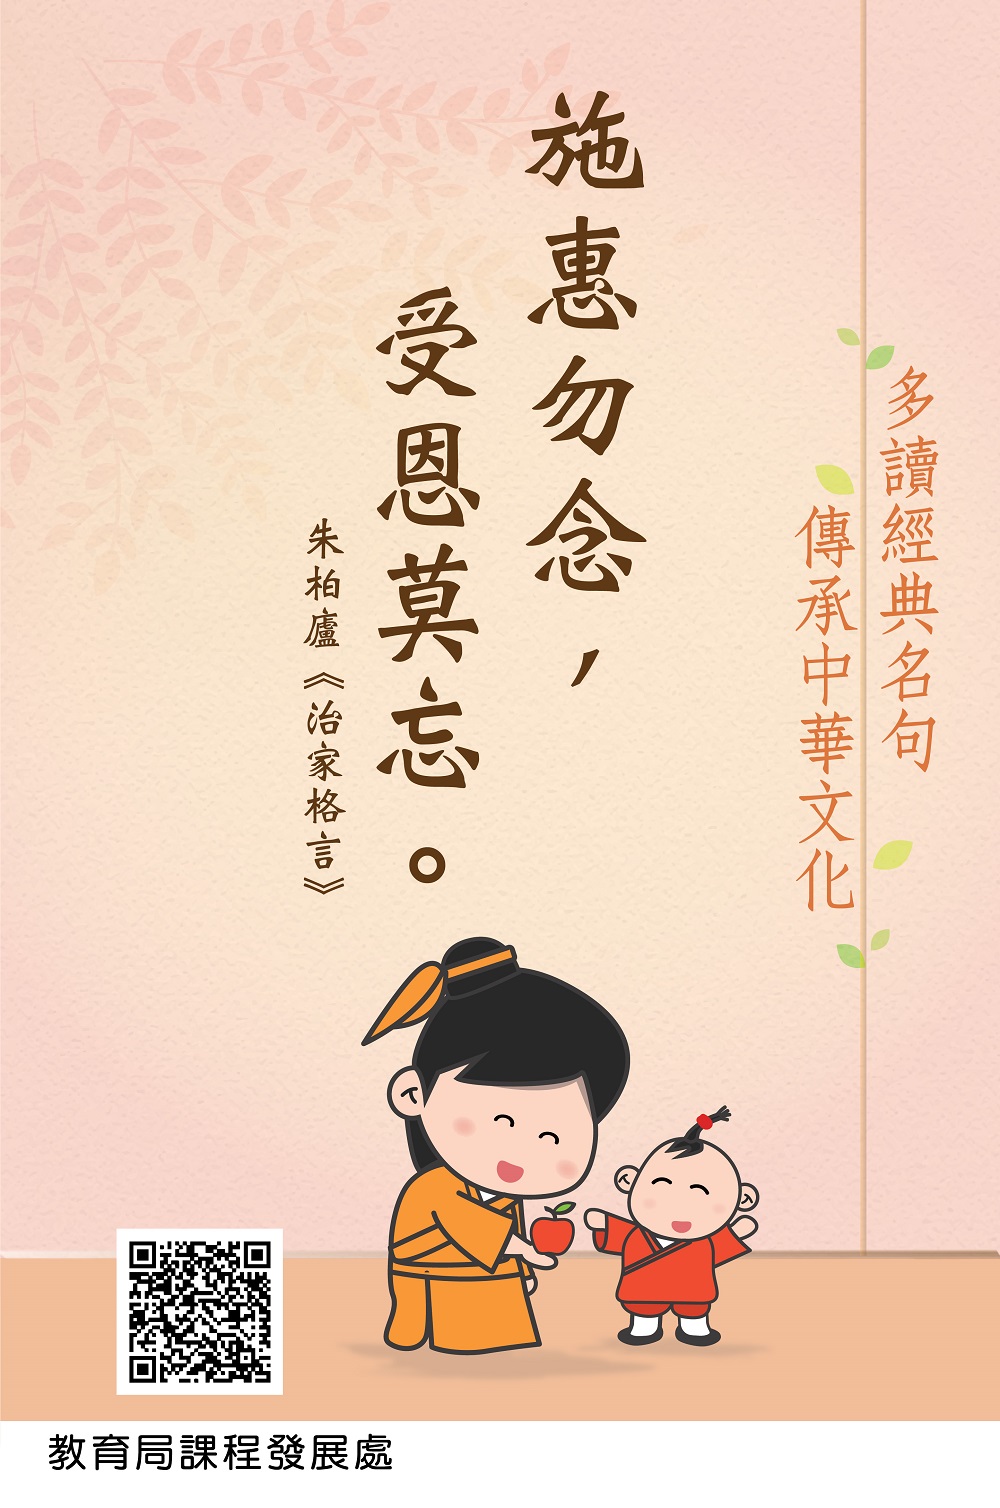 經典名句匯聚中華文化精髓與傳統智慧。教育局網站圖片